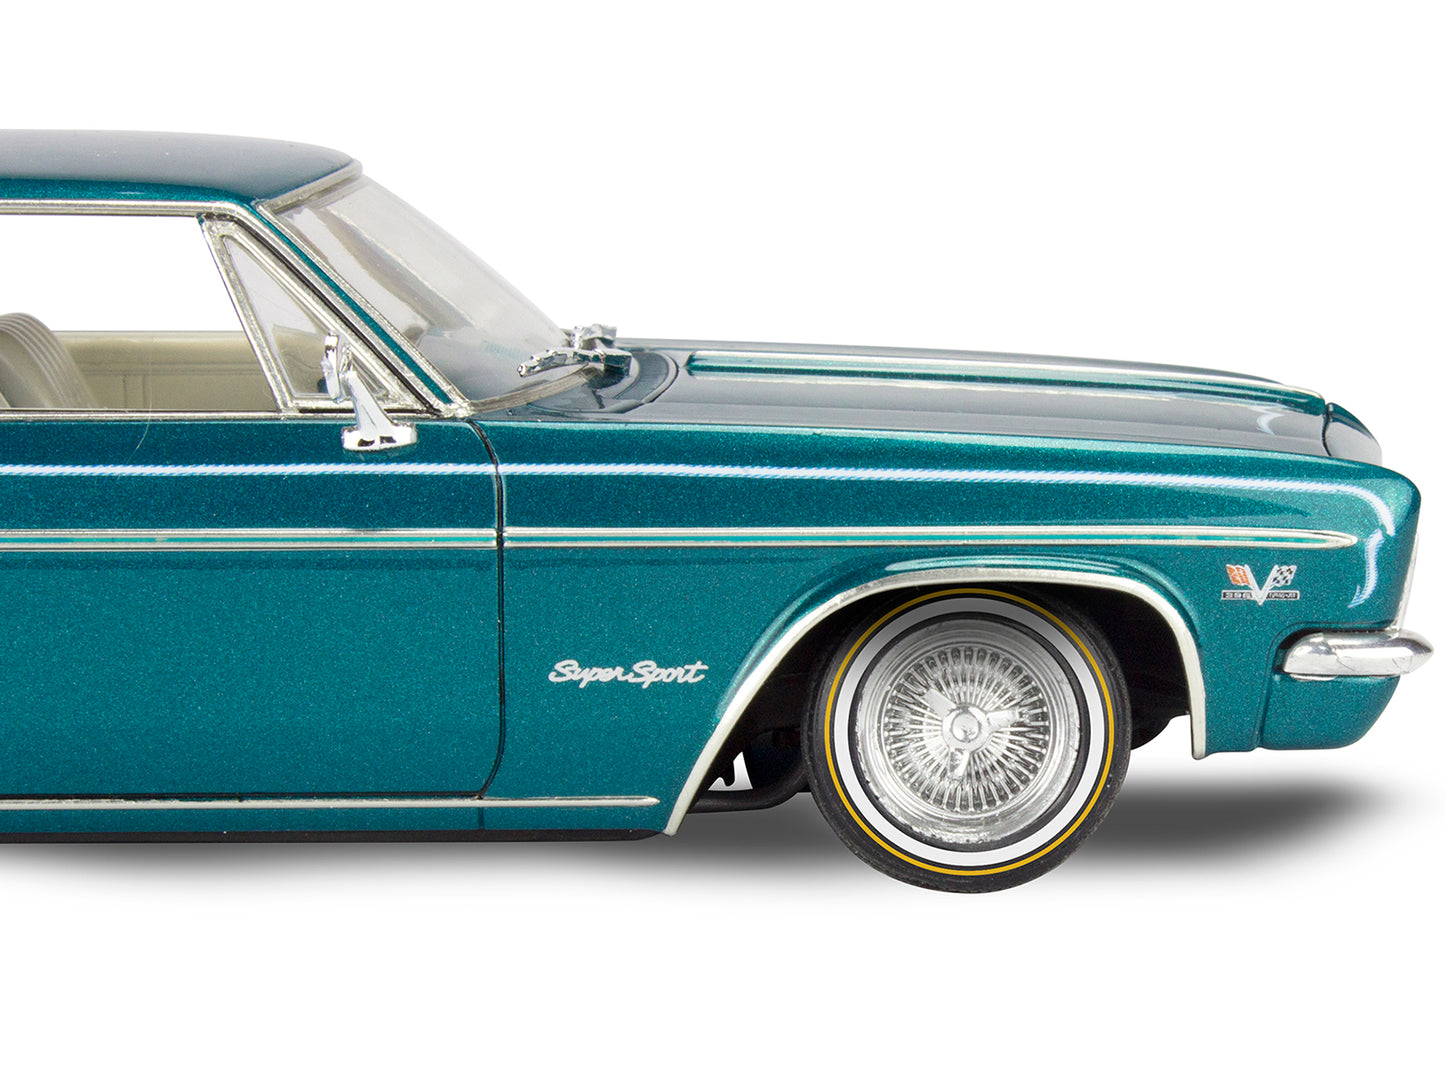 level 4 model kit 1966 chevrolet impala ss 396 2-in-1 kit 1/25 scale model